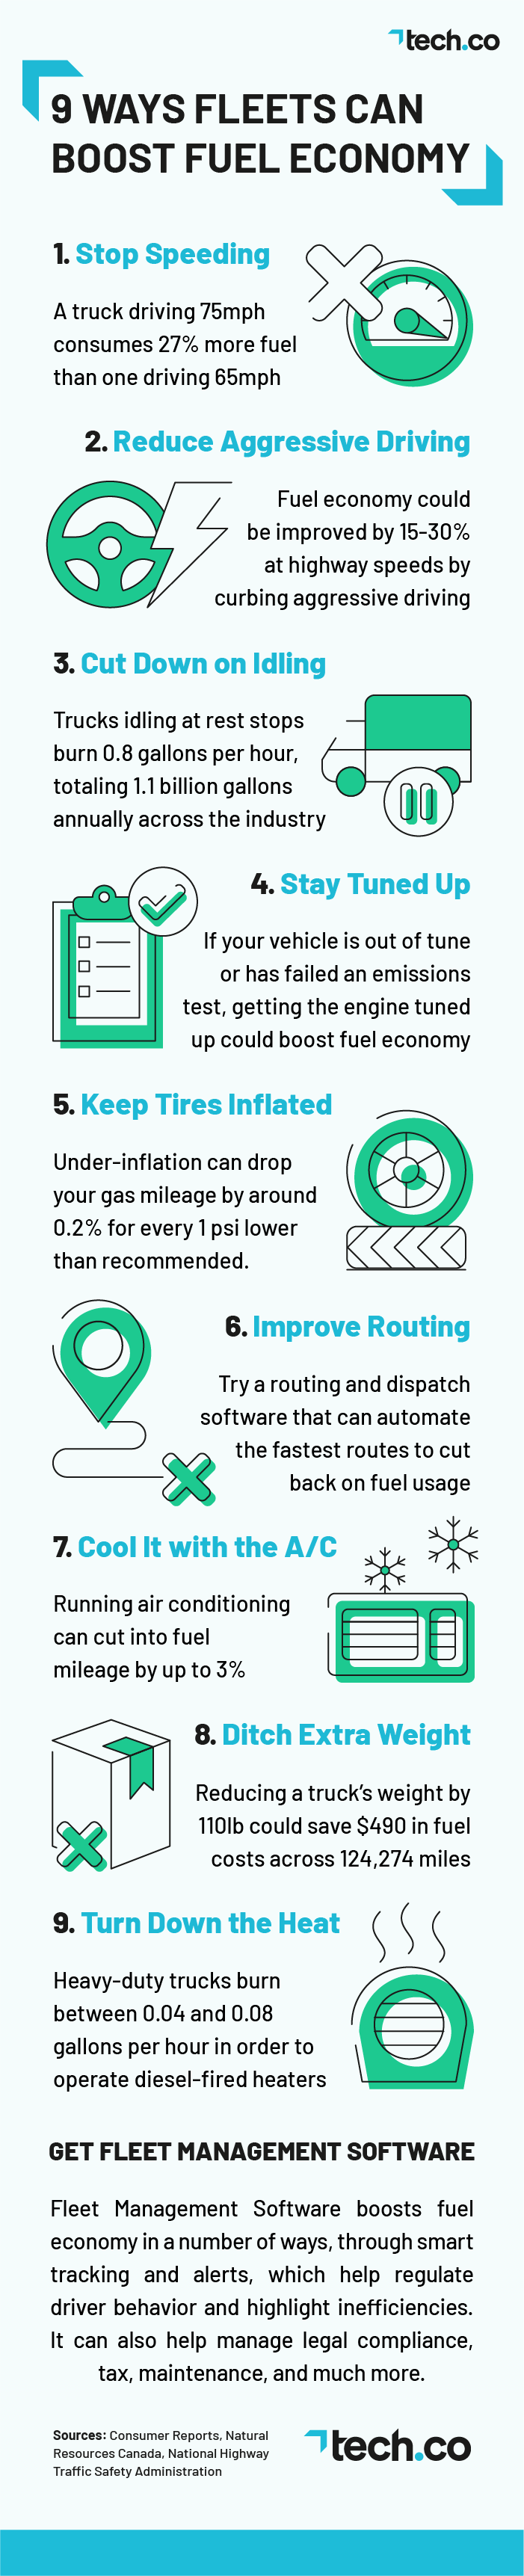 Fuel Economy Infographic